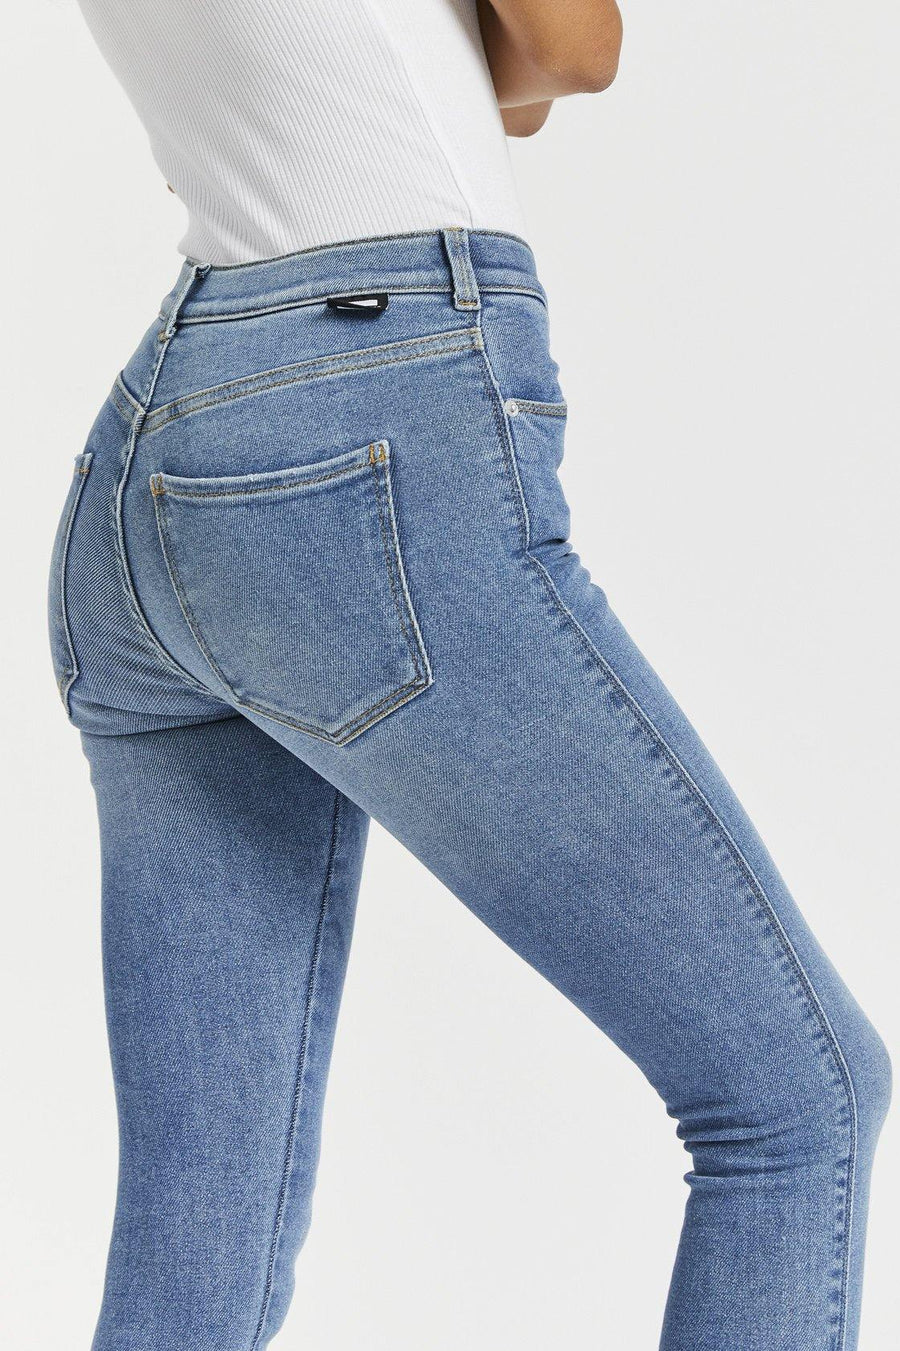 Lexy Jeans - Westcoast Sky Blue - Dr Denim Jeans - Australia & NZ